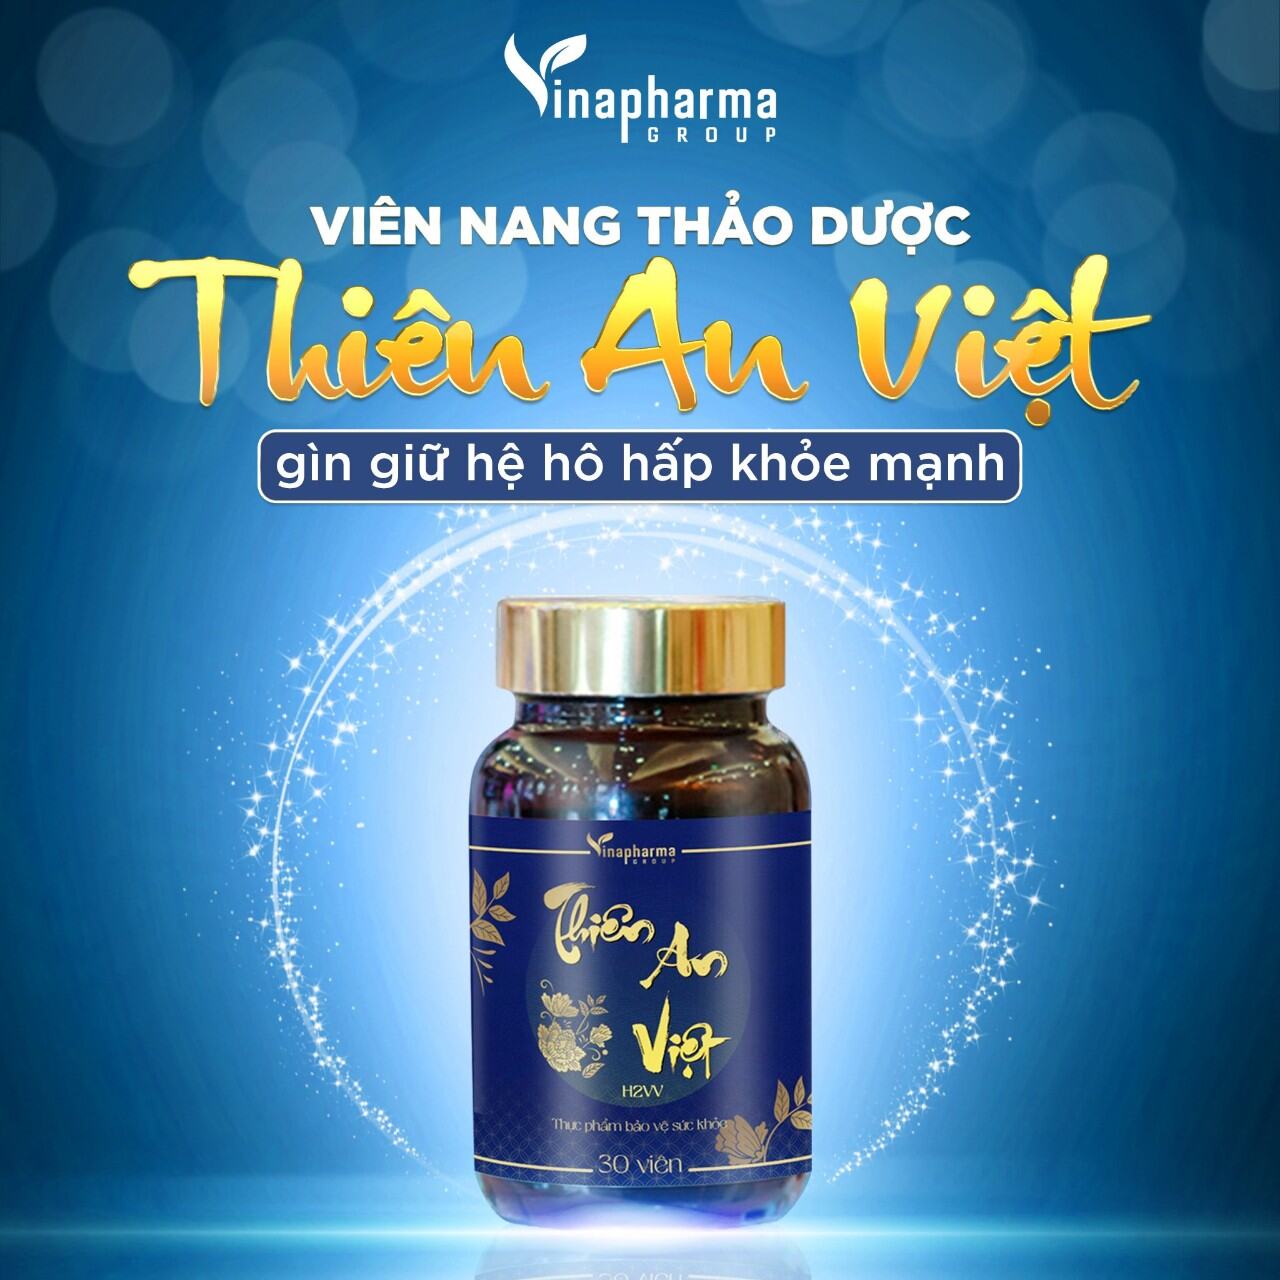 Viên nang Thiên An Việt